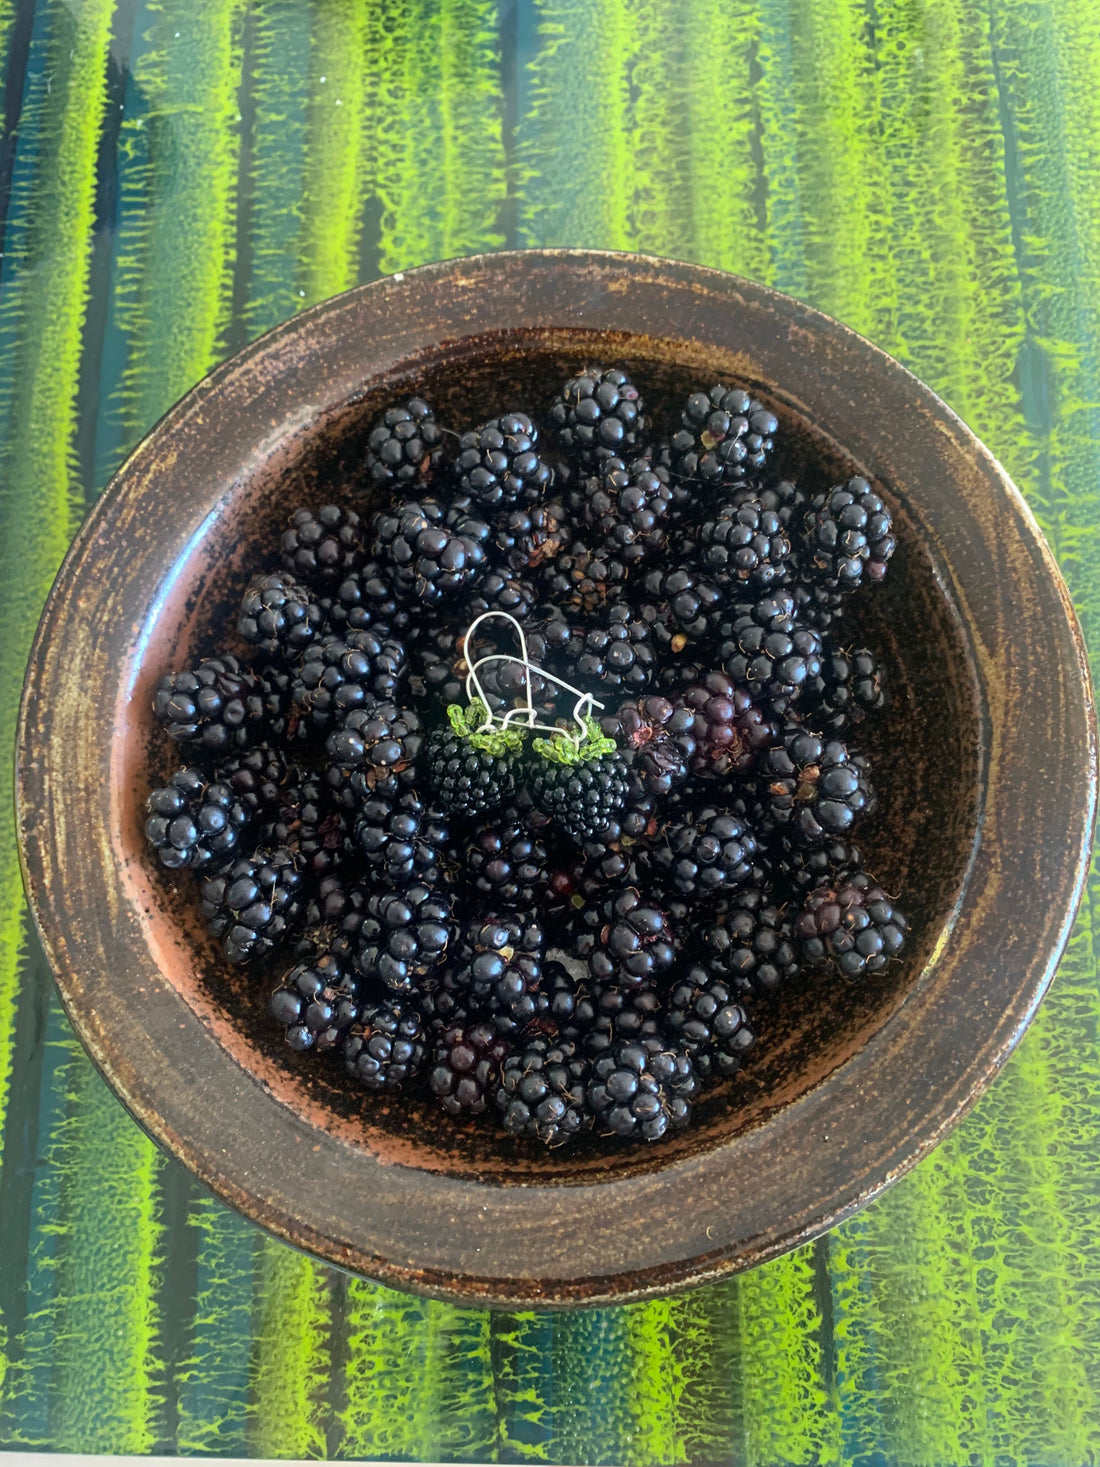 Juicy ripe blackberries